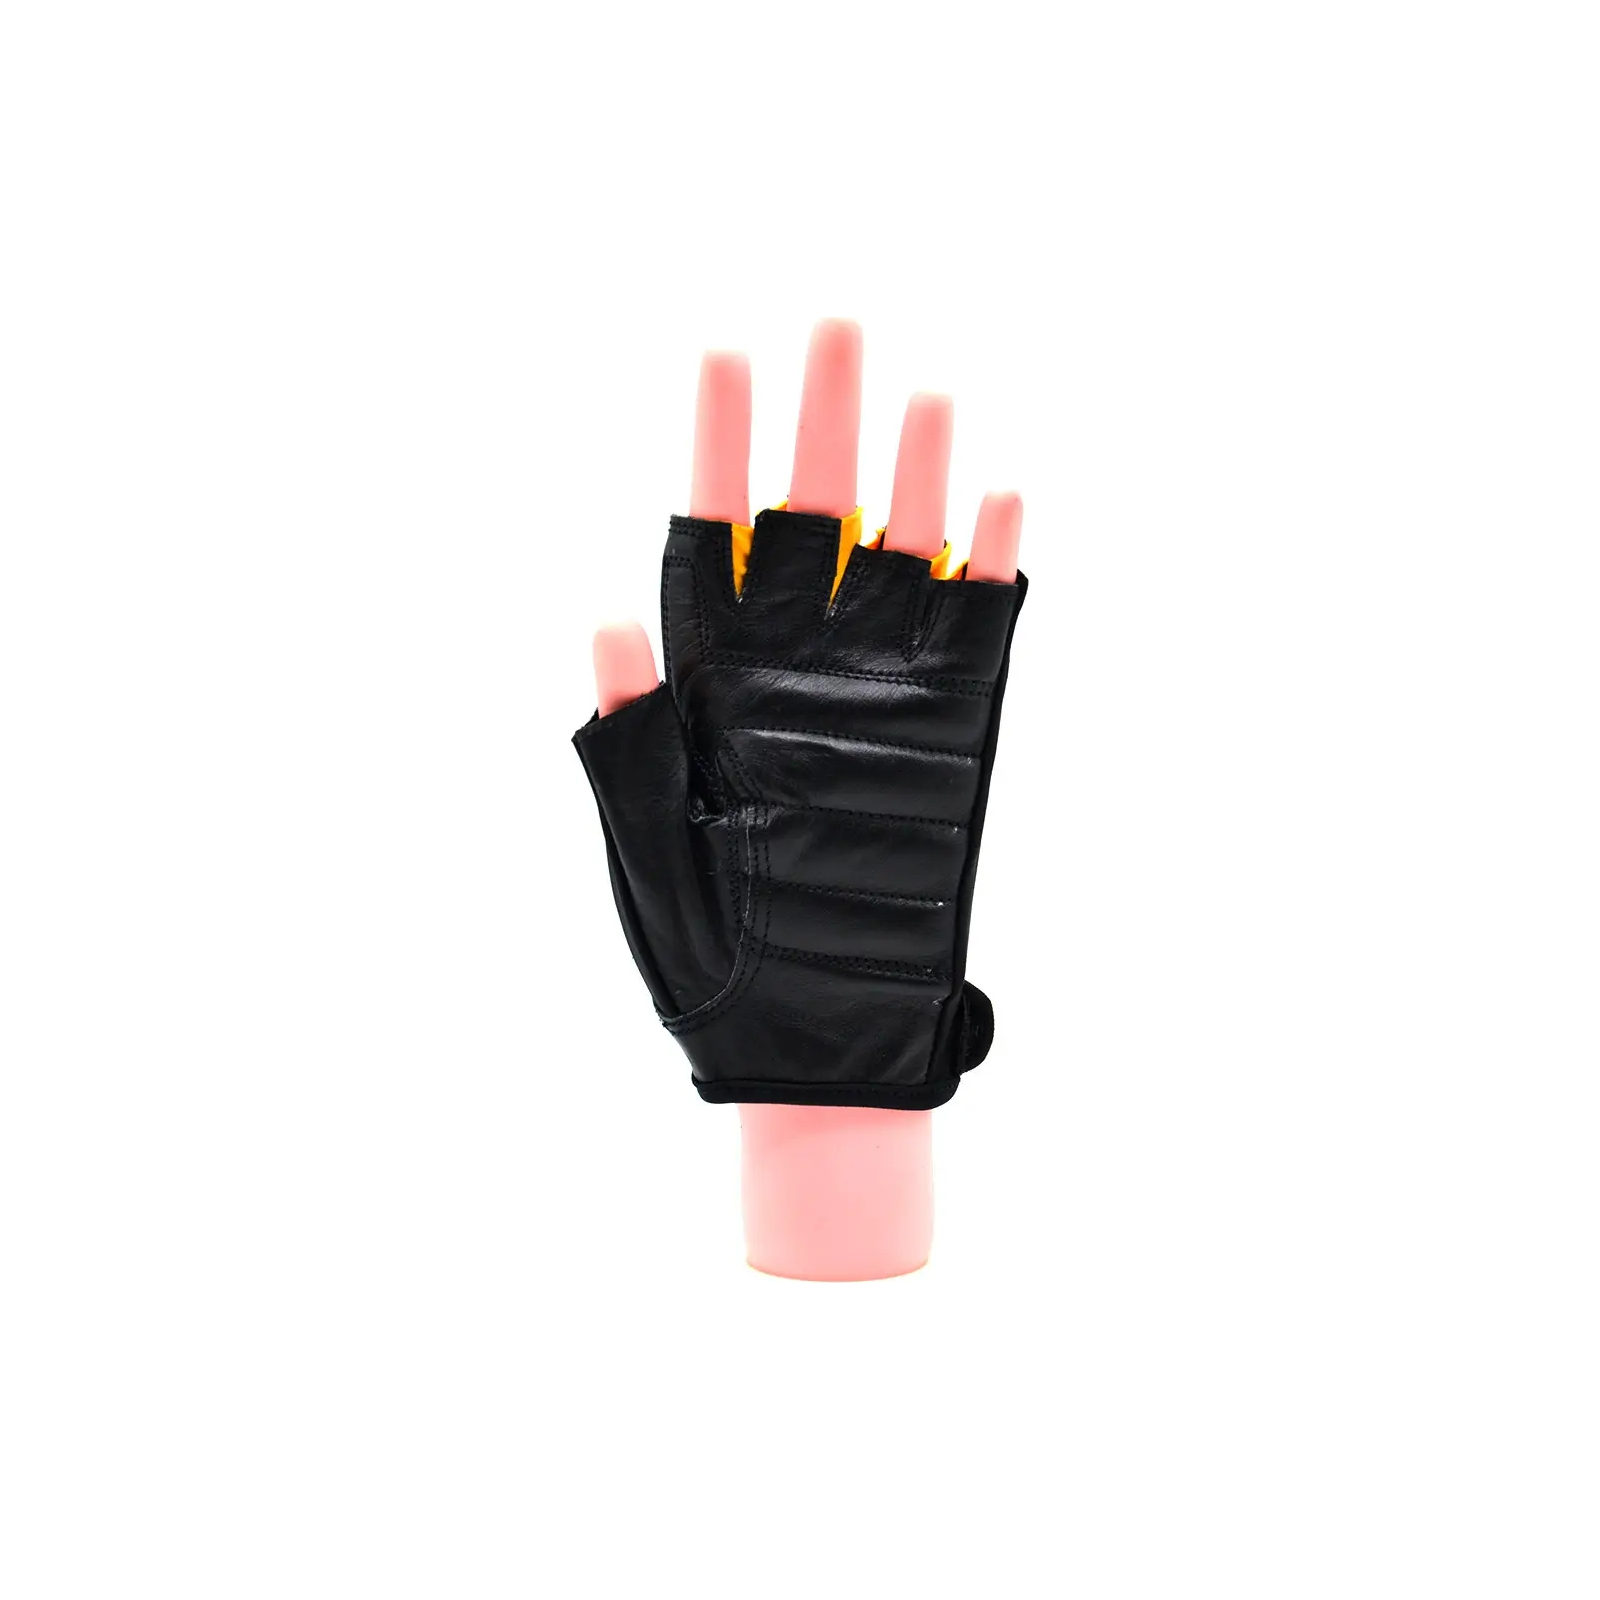 Перчатки для фитнеса MadMax MFG-251 Rainbow Pink S (MFG-251-PNK_S) изображение 6